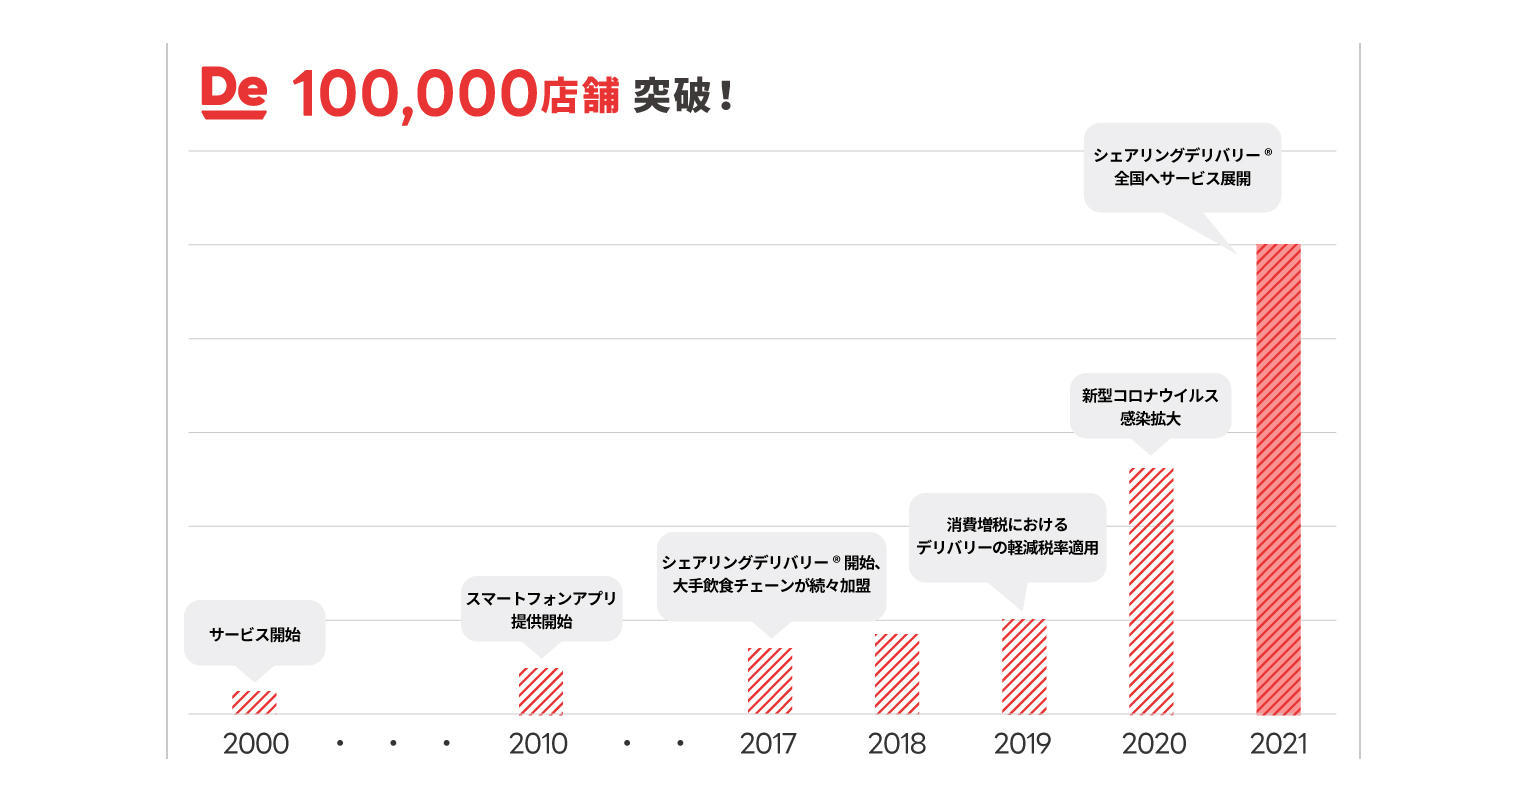 10万店舗グラフ_v2 (1).jpg